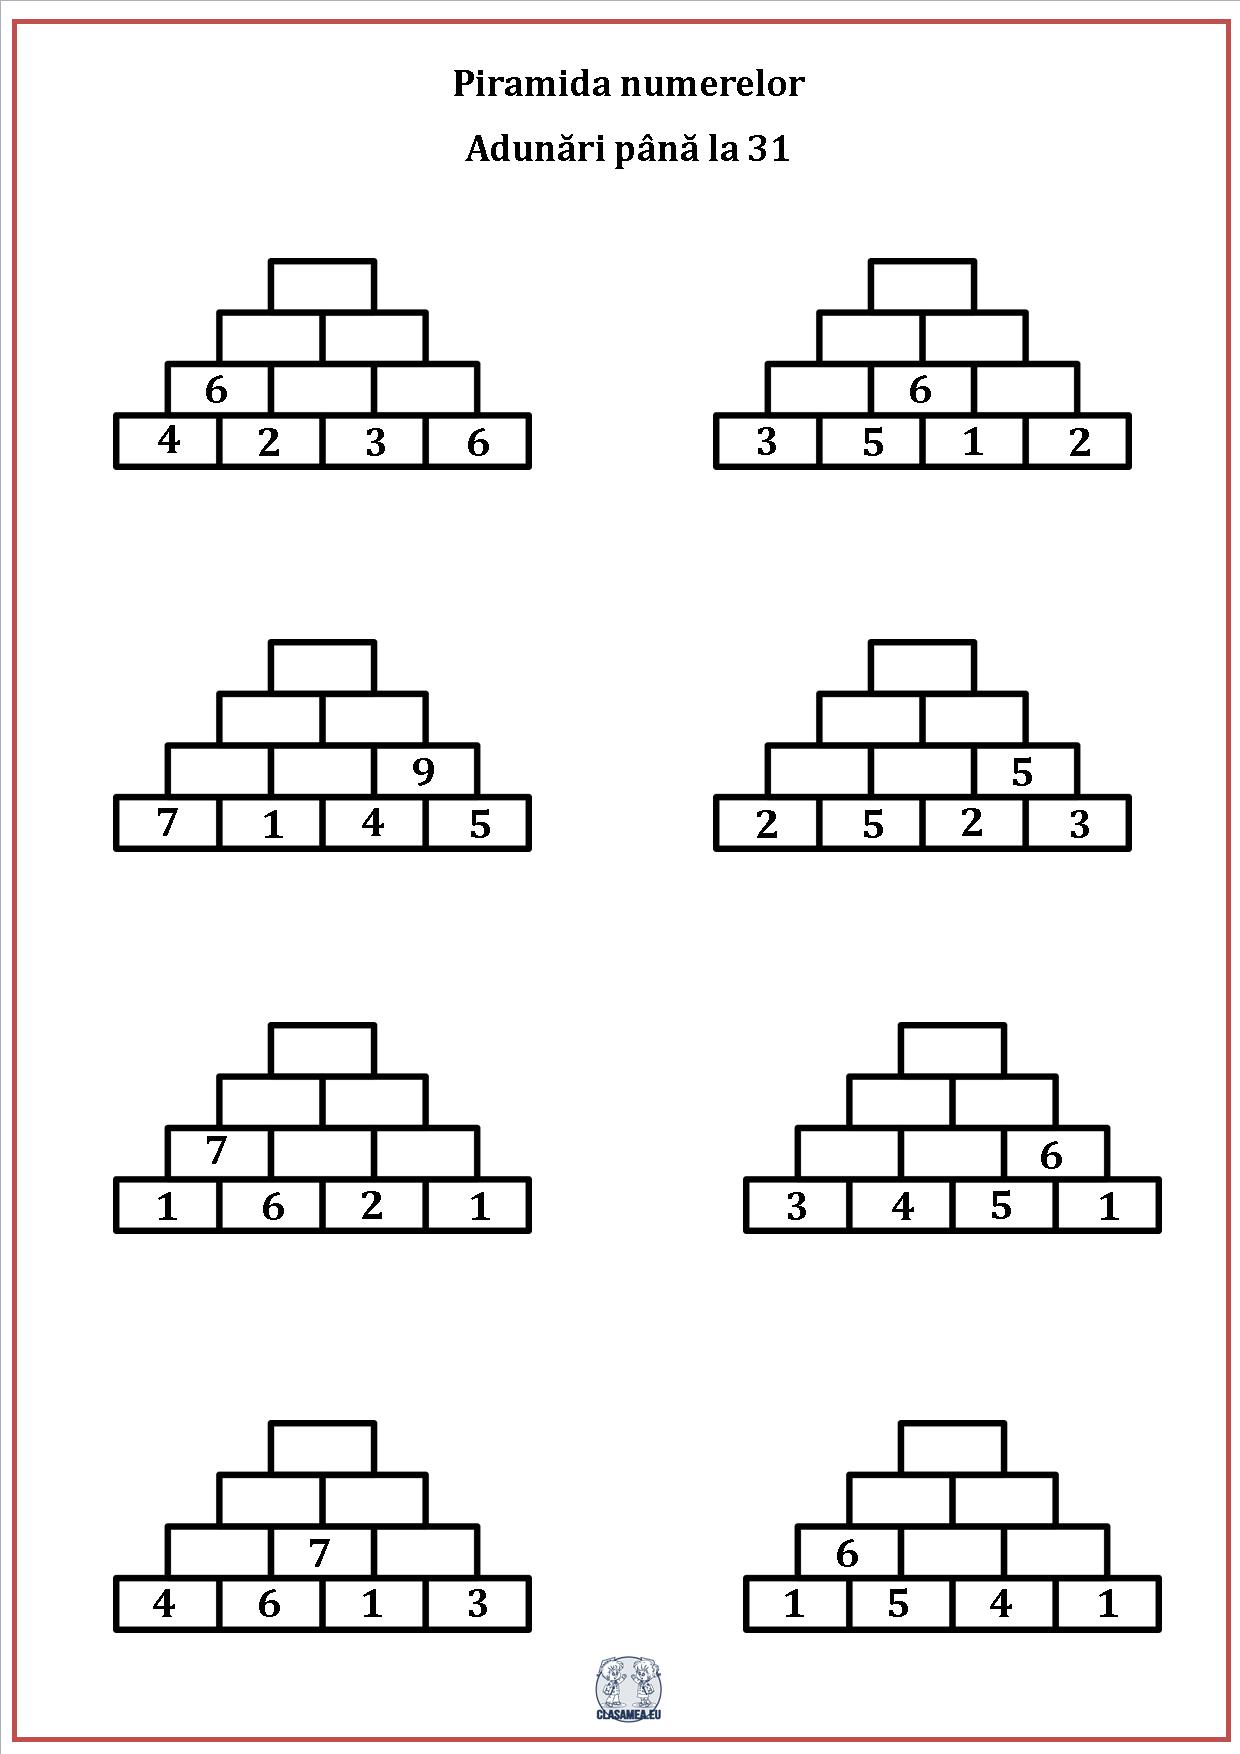 Piramida numerelor - Adunarea numerelor până la 31